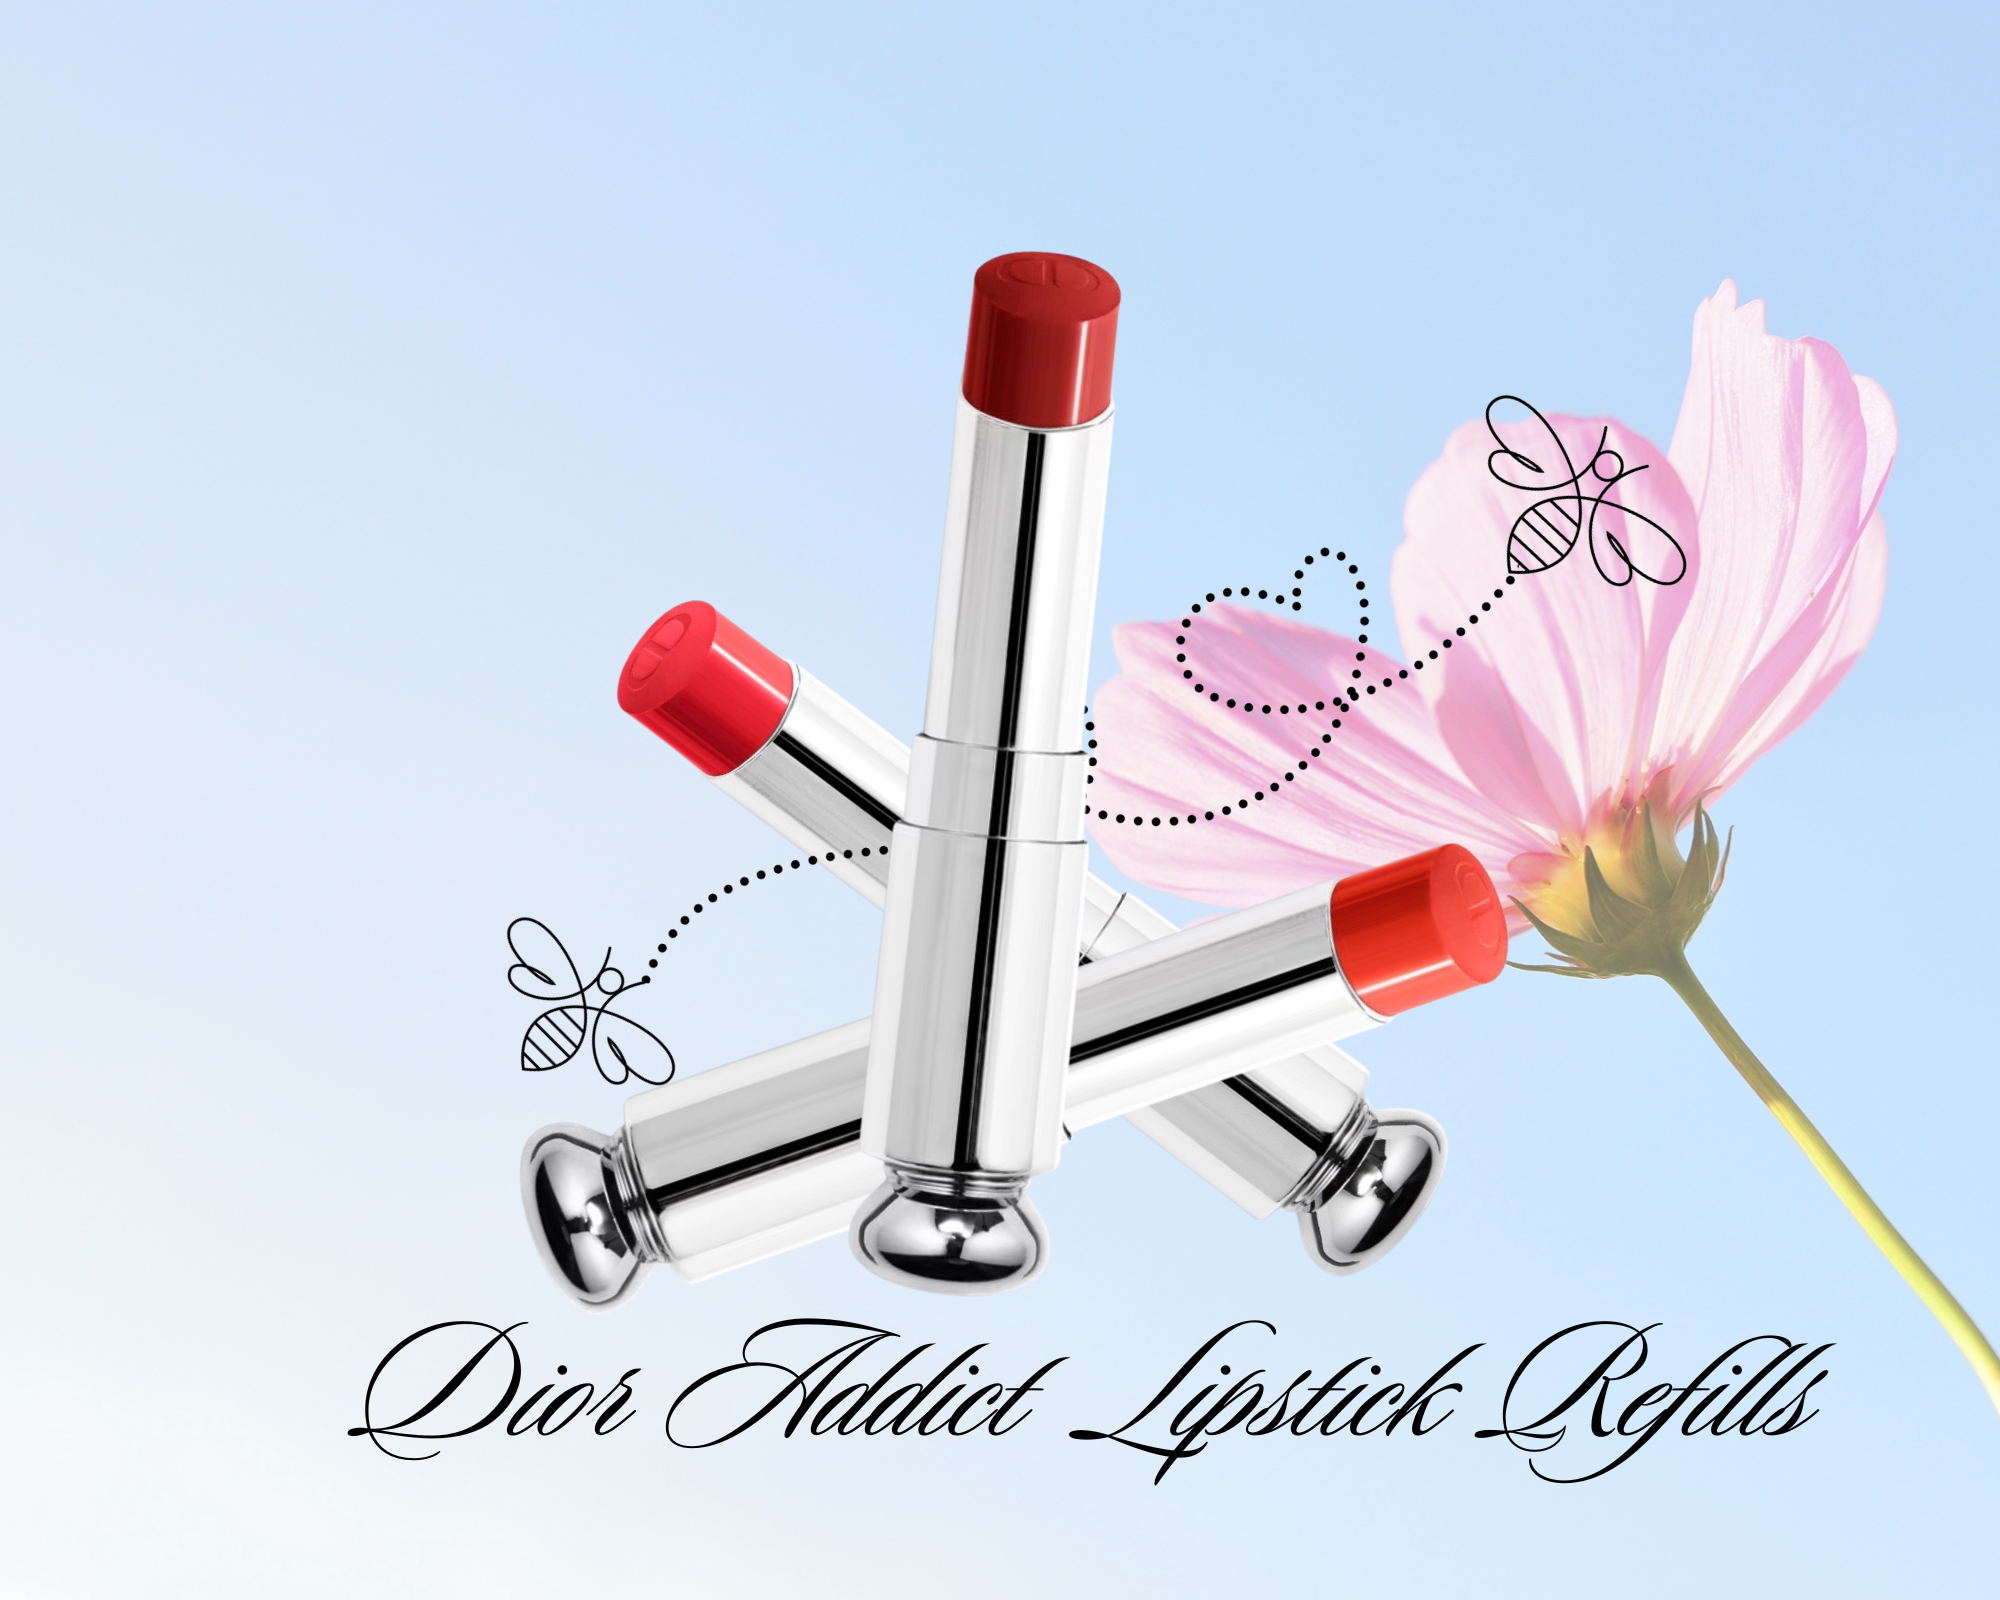 Lipstick of the Day! Dior Addict Shine Lipstick in 422 Rose Des